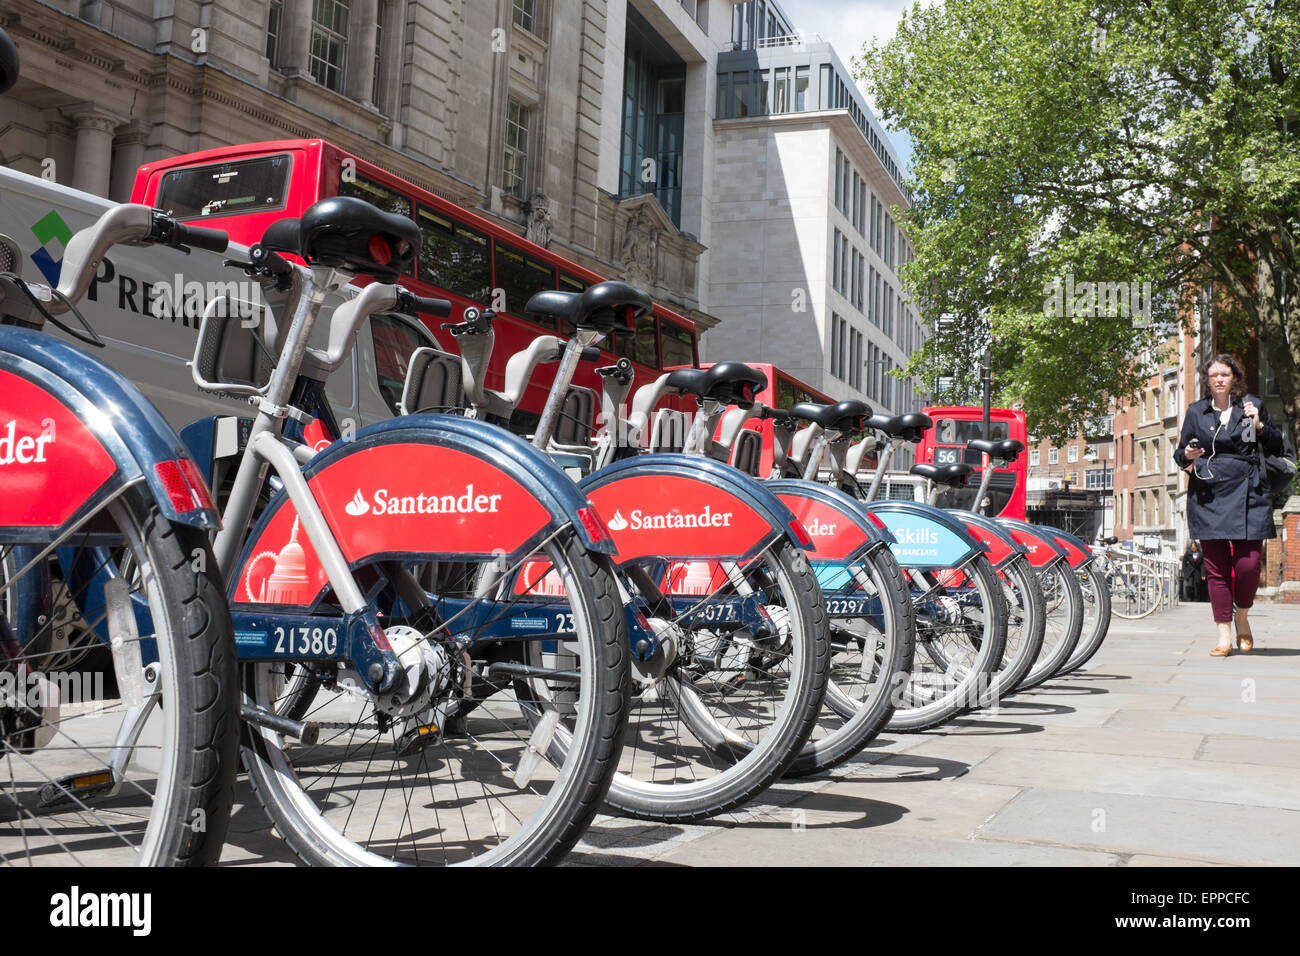 Ciclos de Santander es Londres alquiler de bicicletas públicas del régimen  en Londres, también conocida como 'Boris Bike' Fotografía de stock - Alamy